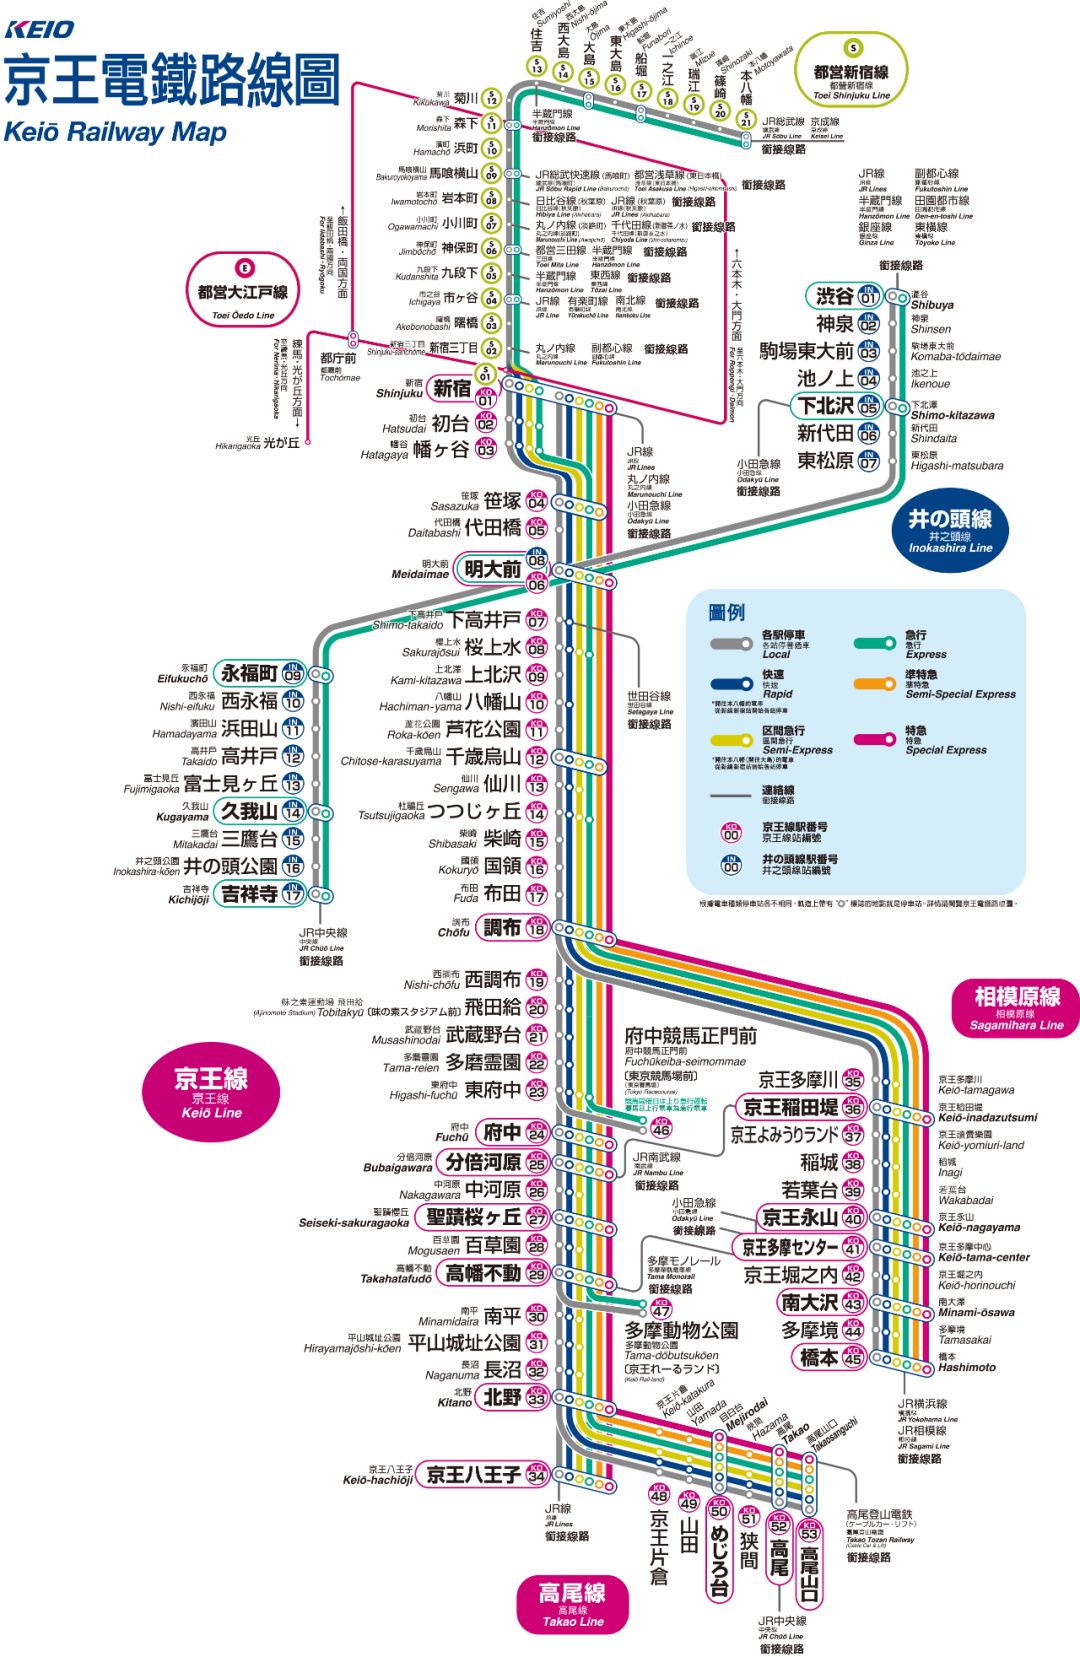 自由行必看一篇搞懂东京交通系统与电车路线